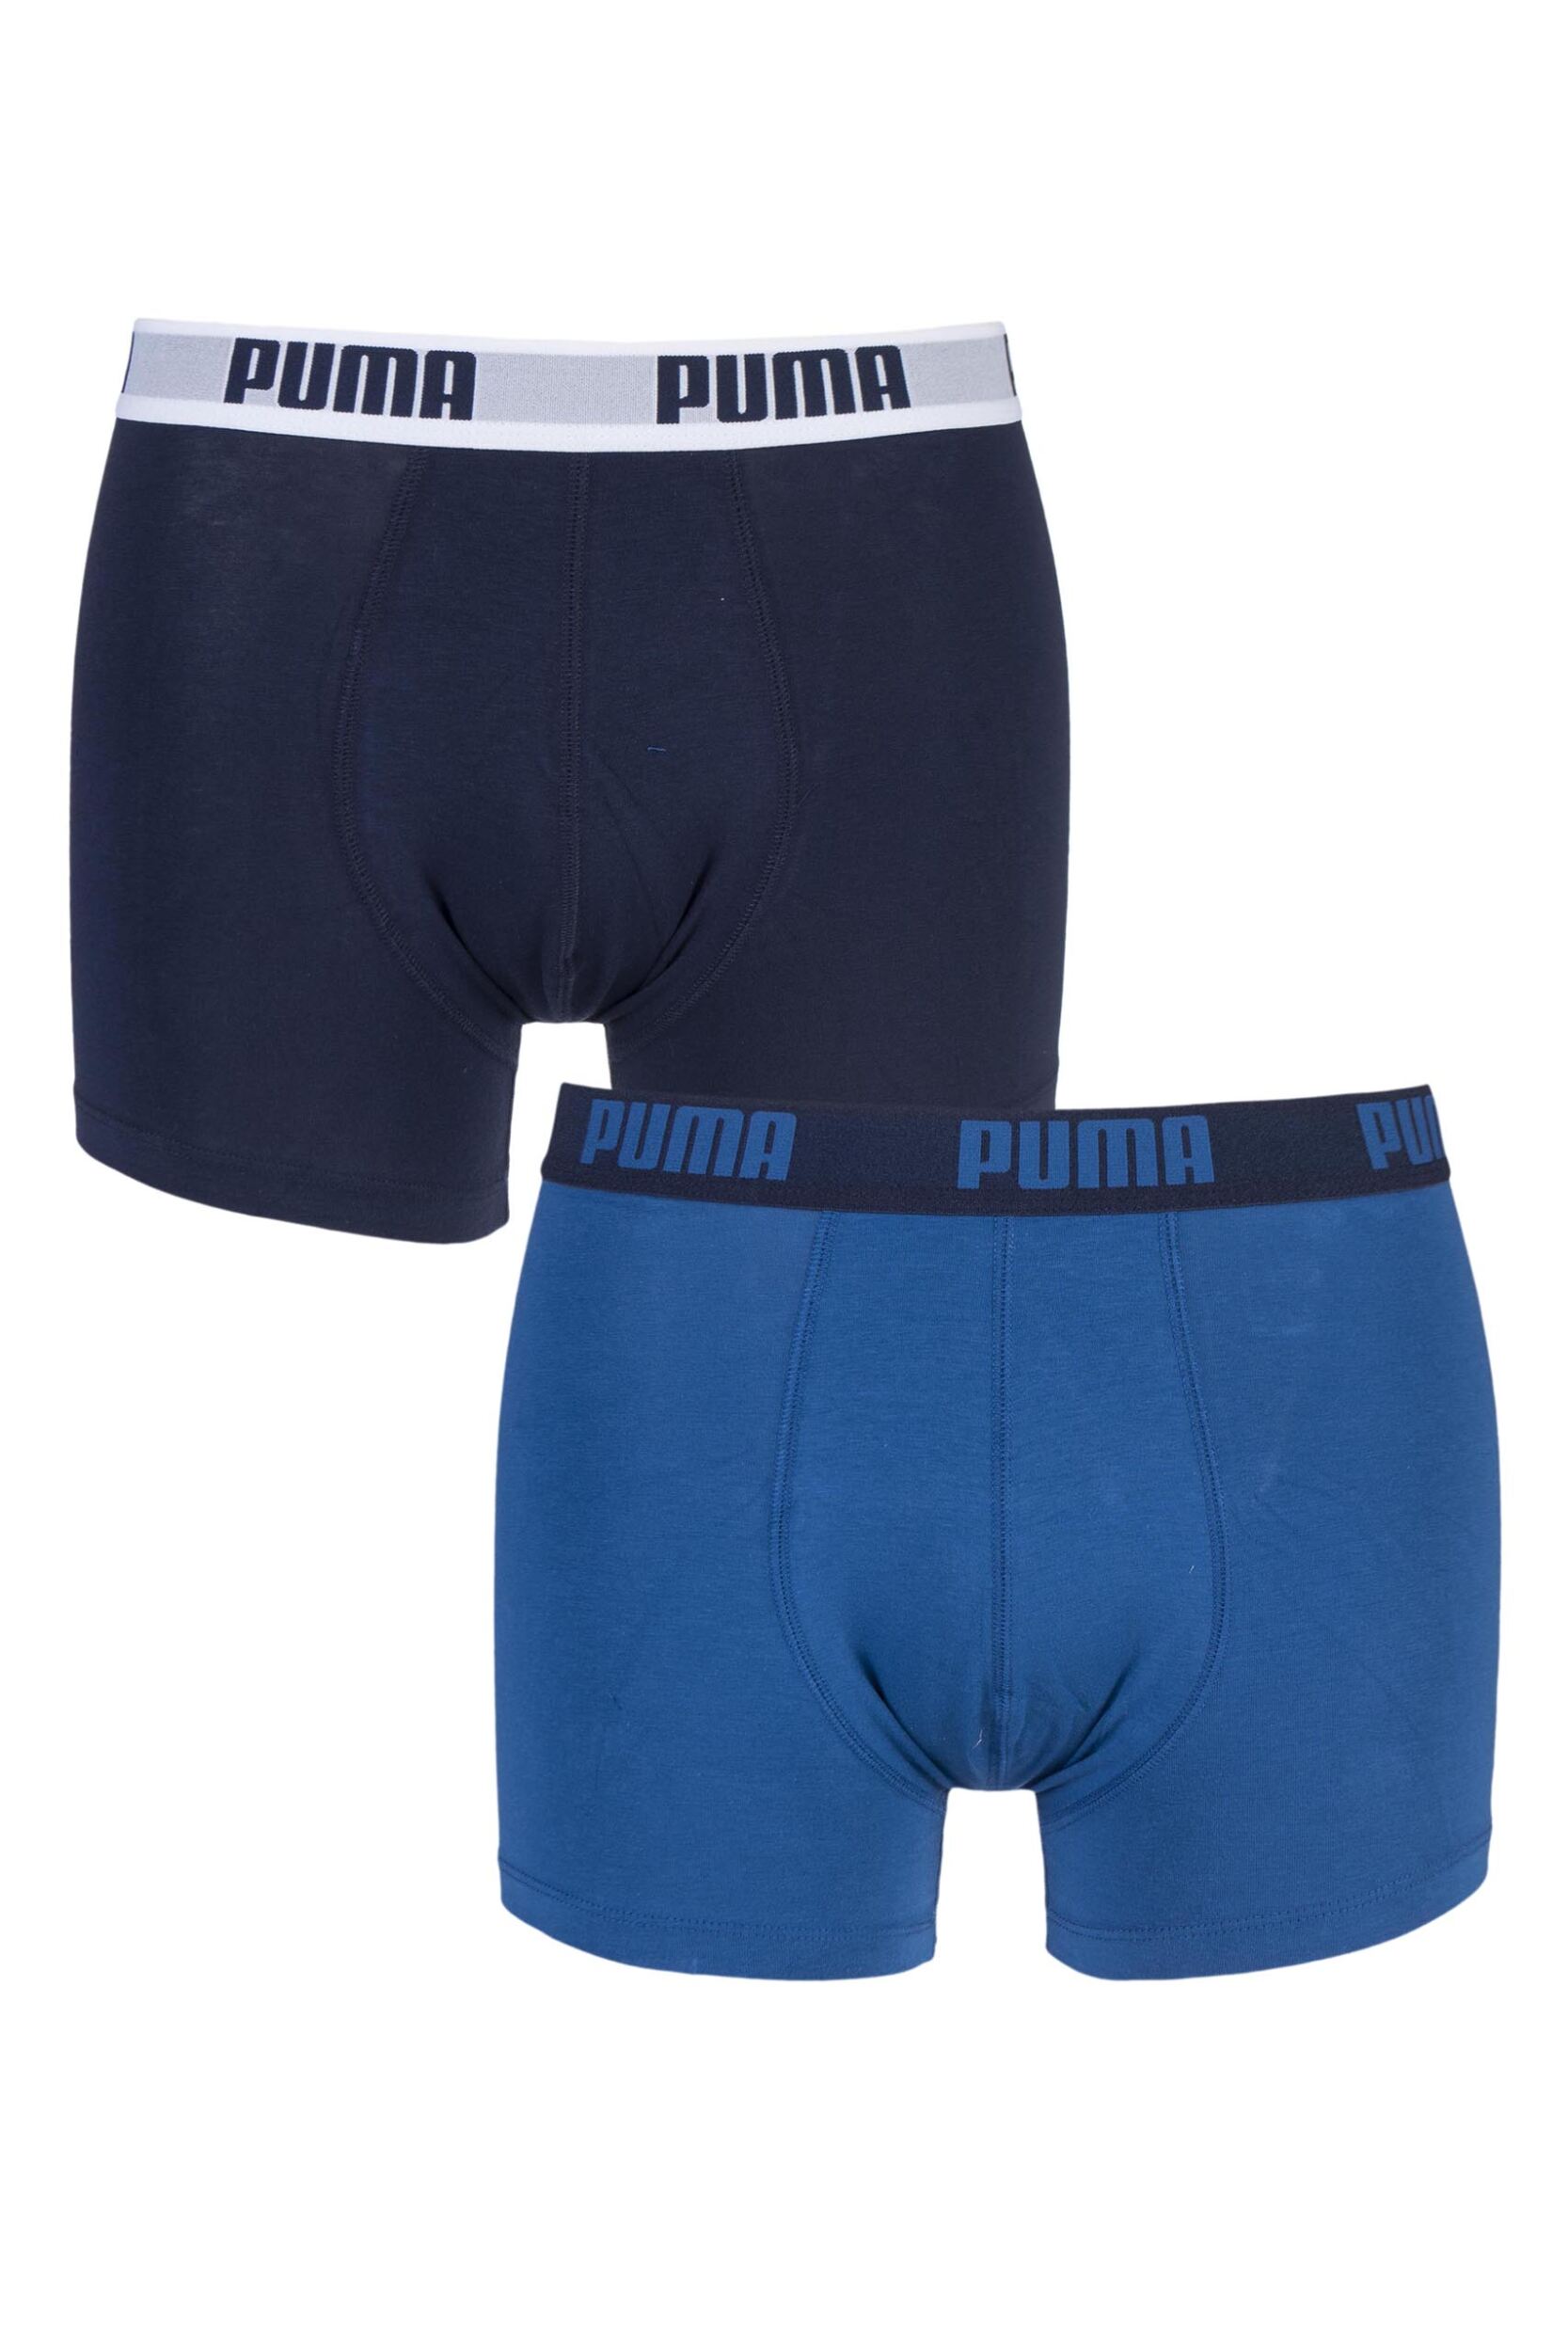 Mens 2 Pair Puma Basic Boxer Shorts | eBay